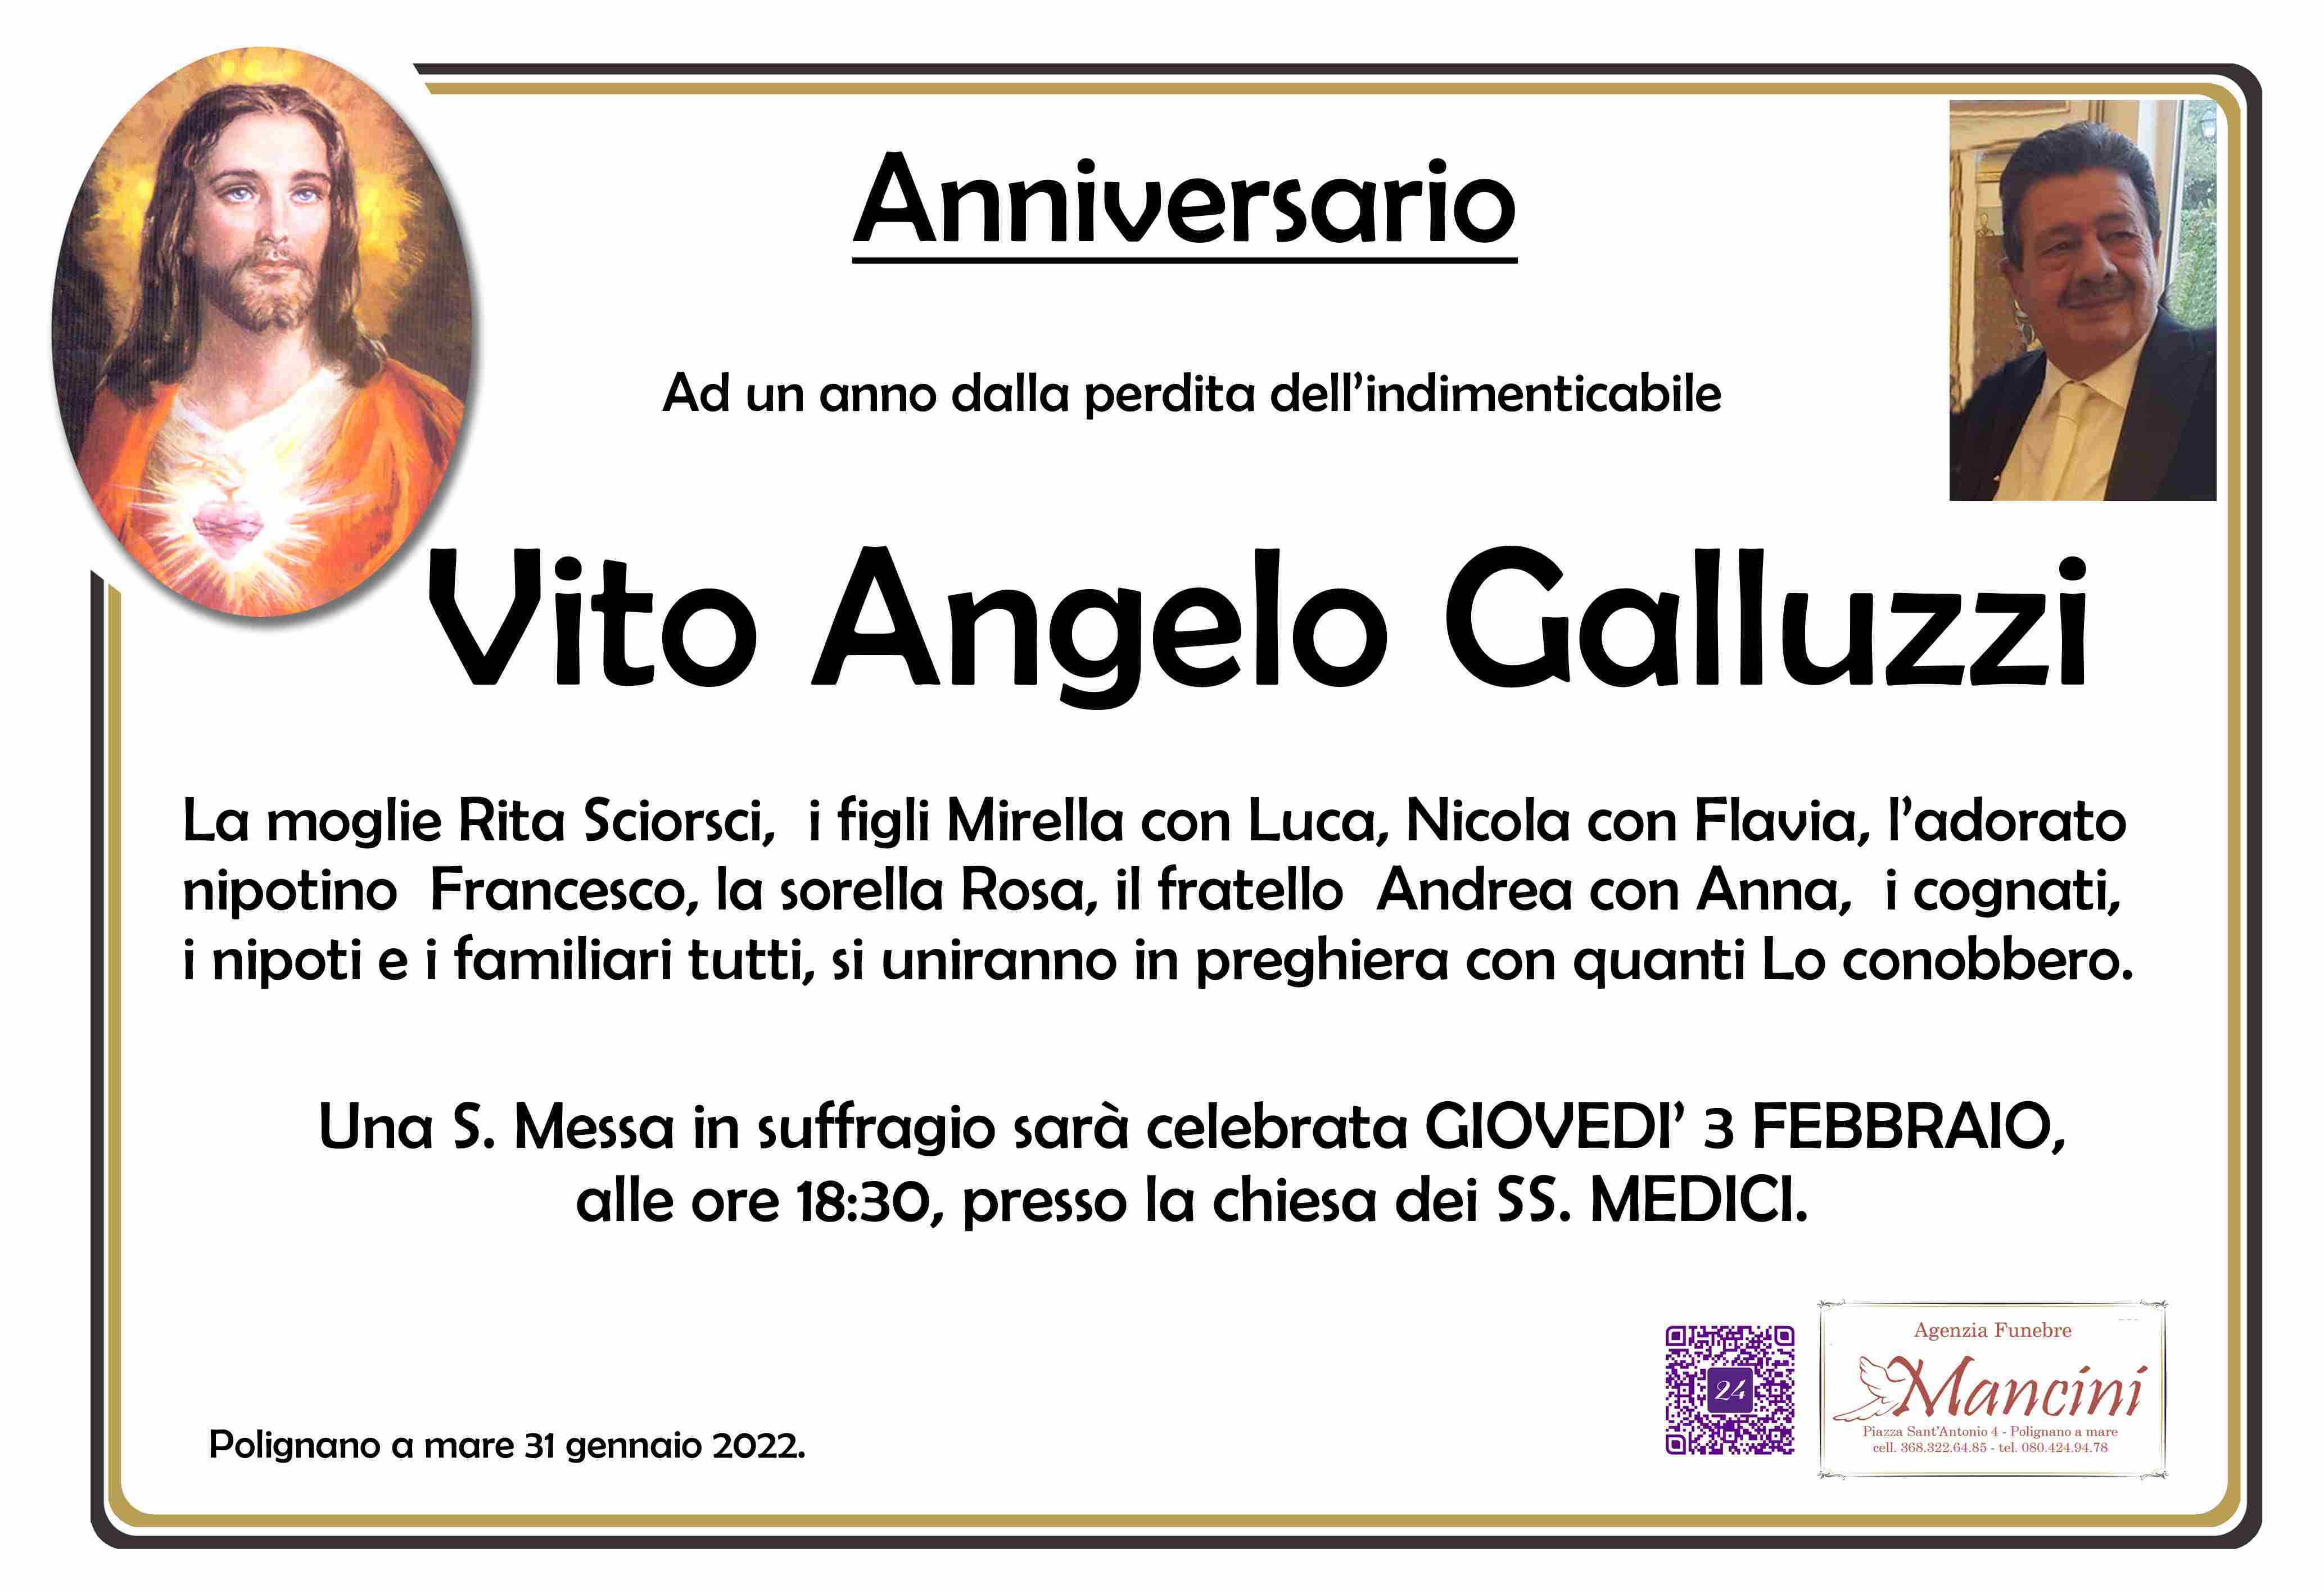 Vito Angelo Galluzzi